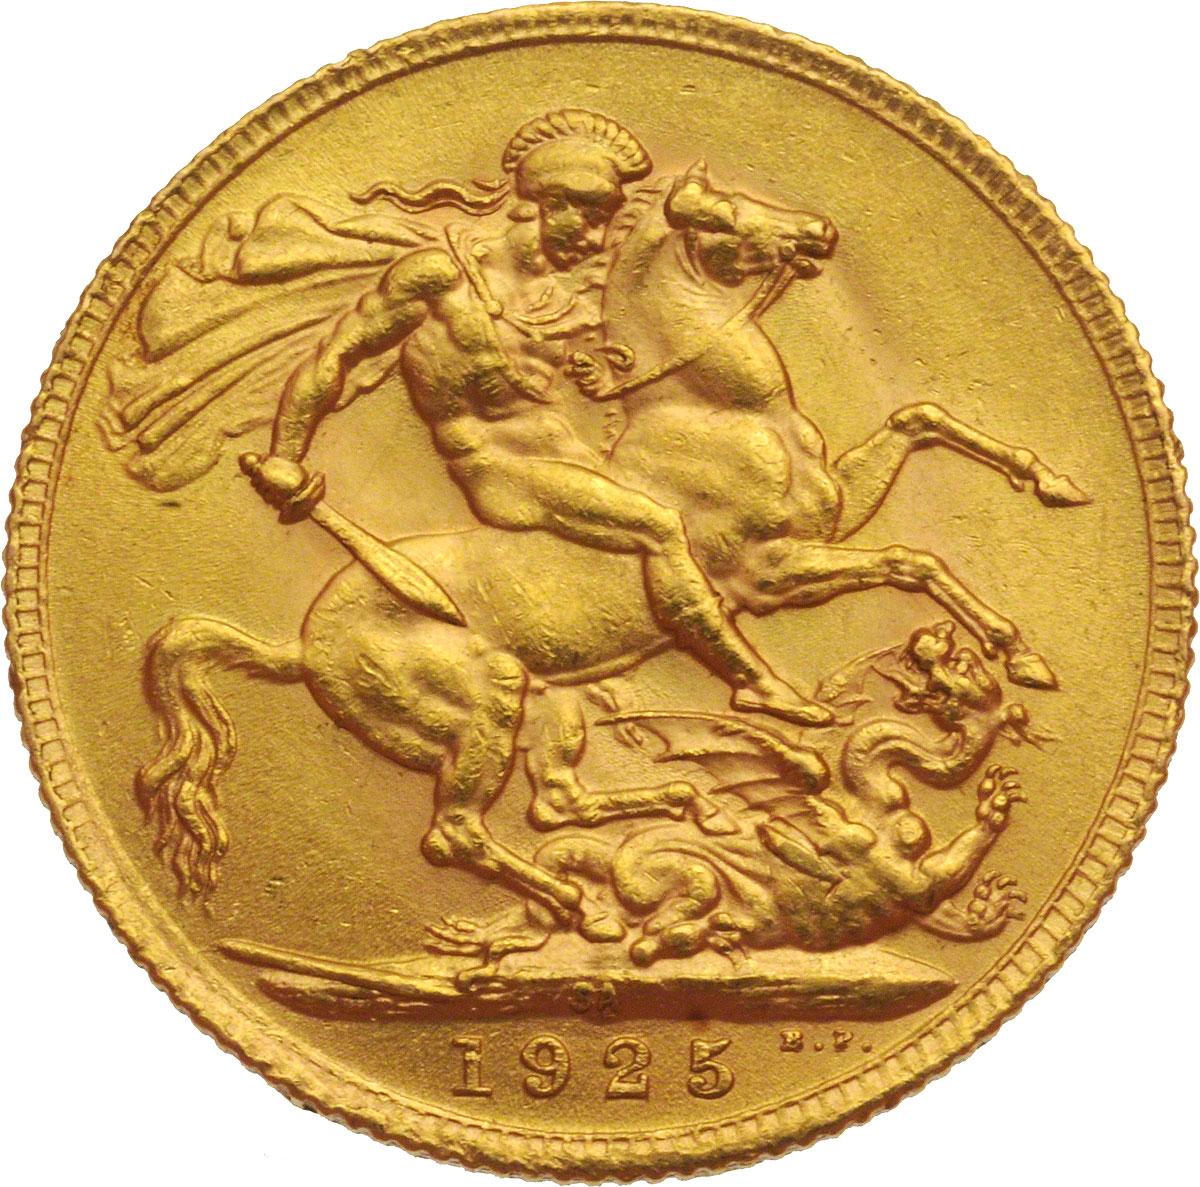 1925 Γεώργιος Ε’ (Νομισματοκοπείο Πρετόρια, Νότια Αφρική)